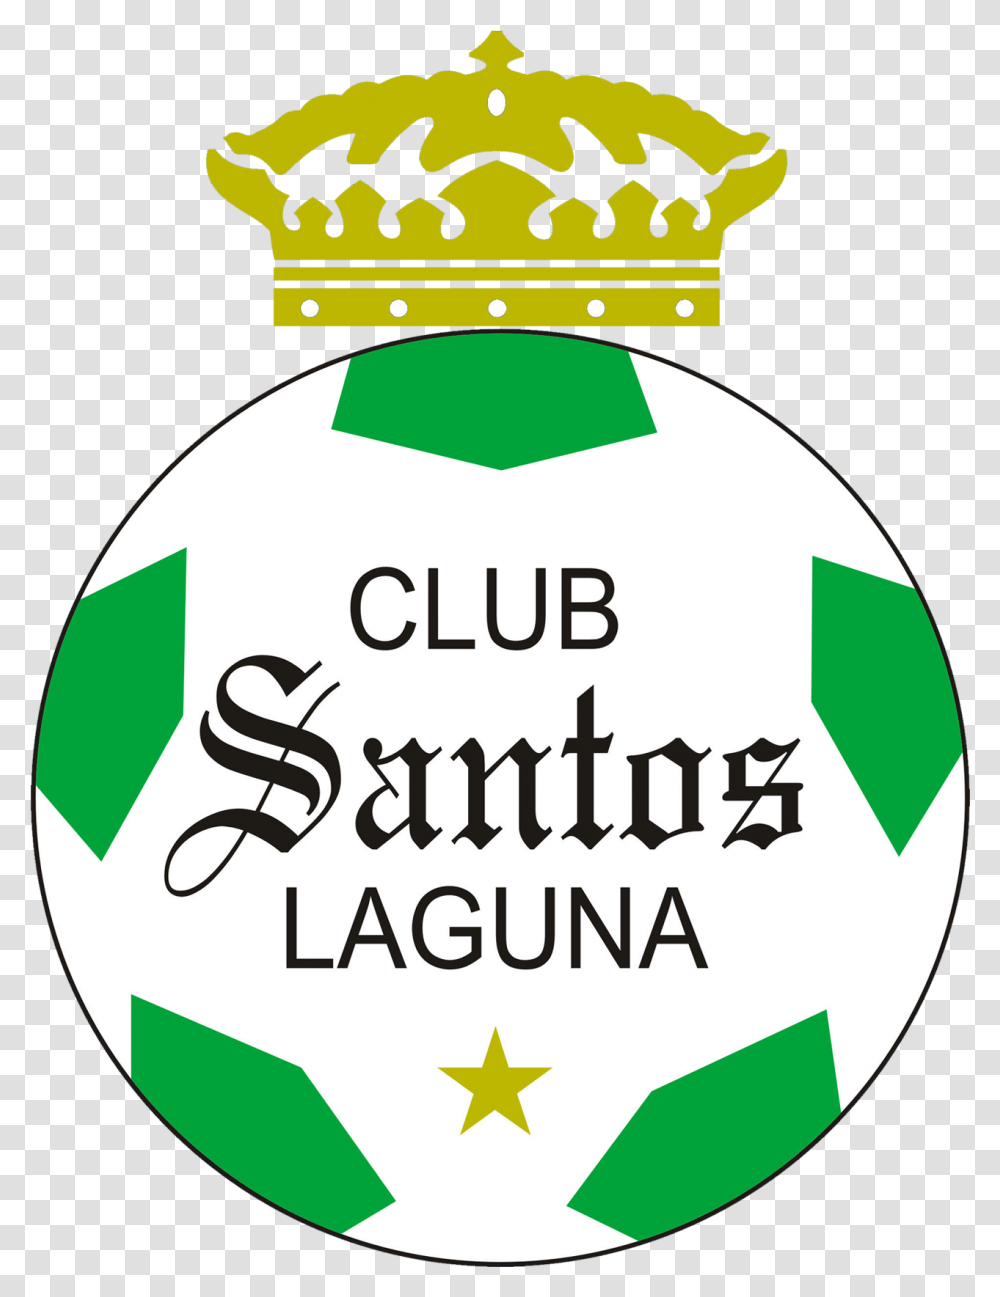 Santos Laguna Logos Santos Laguna Logo, Symbol, Trademark, Text, Badge Transparent Png